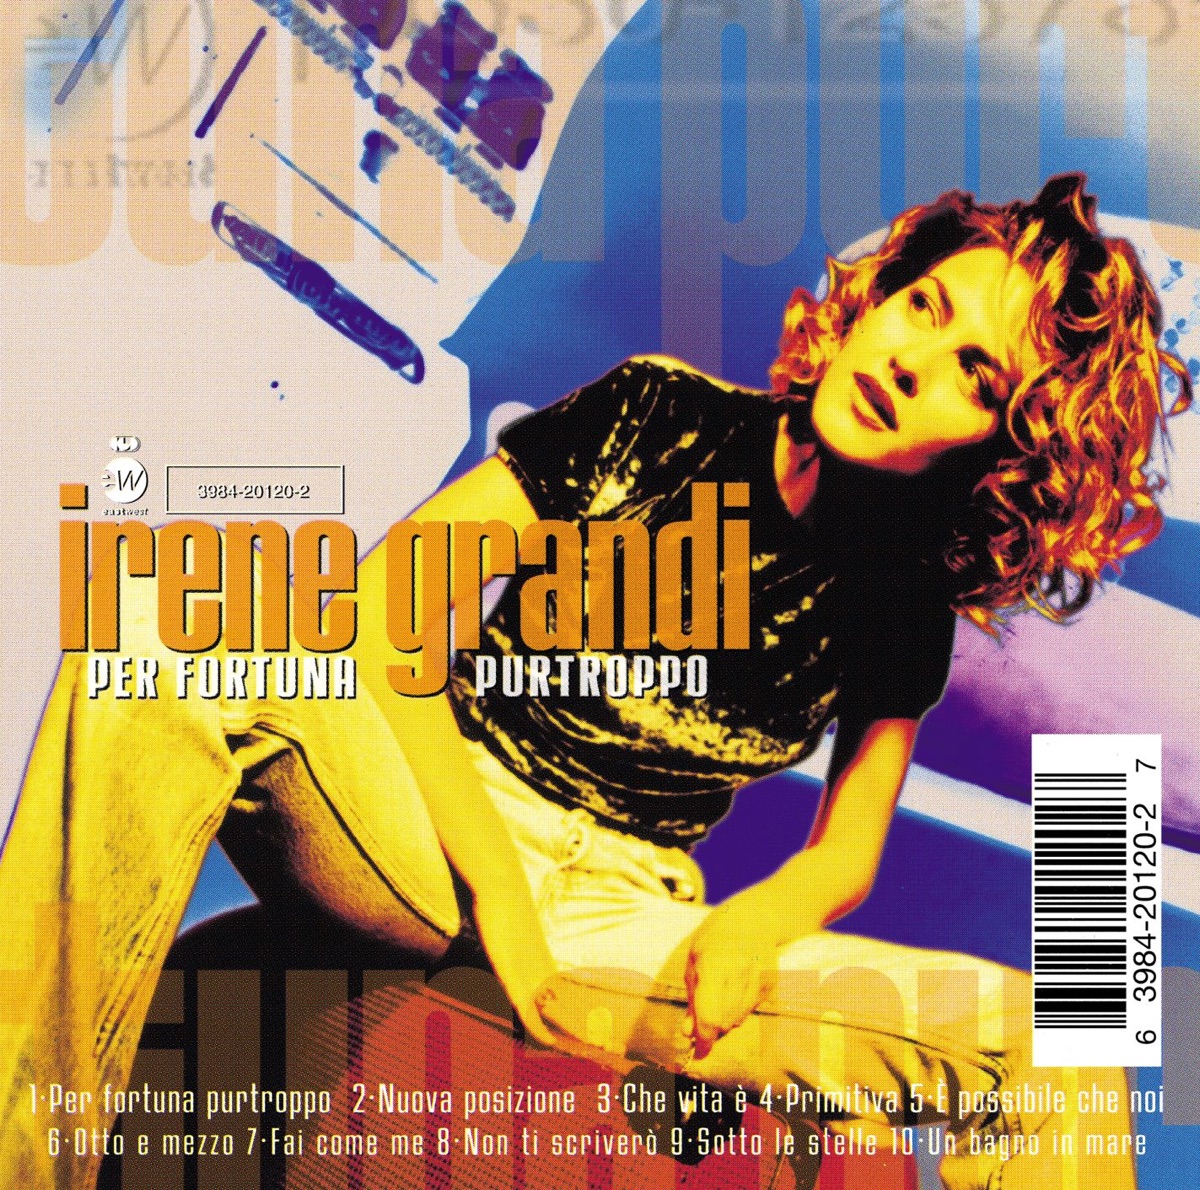 Tutto Irene - Cose da Grandi by Irene Grandi on Apple Music